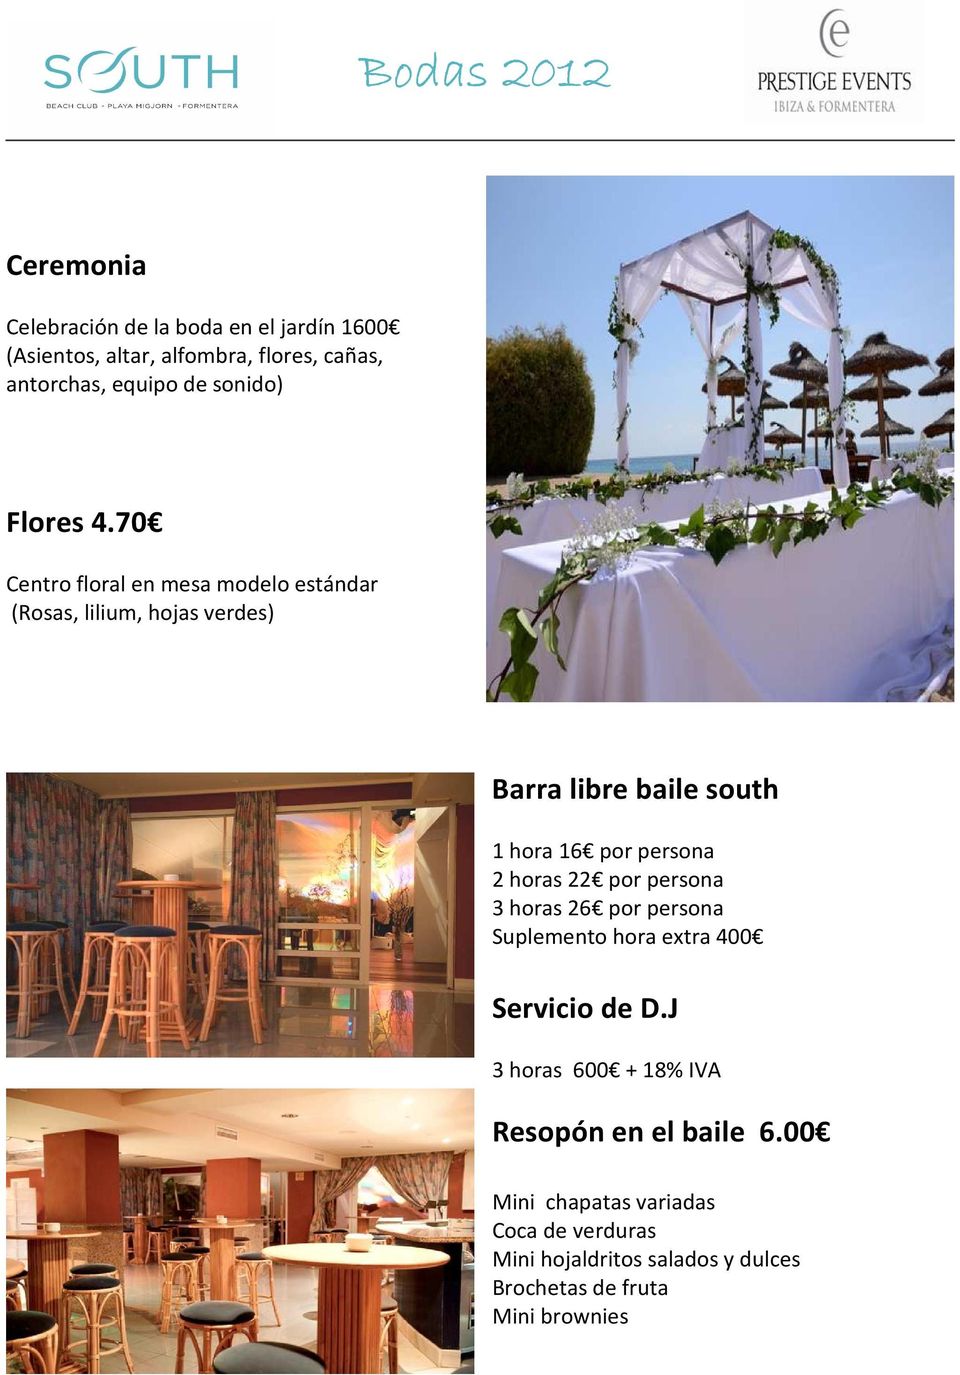 70 Centro floral en mesa modelo estándar (Rosas, lilium, hojas verdes) Barra libre baile south 1 hora 16 por persona 2